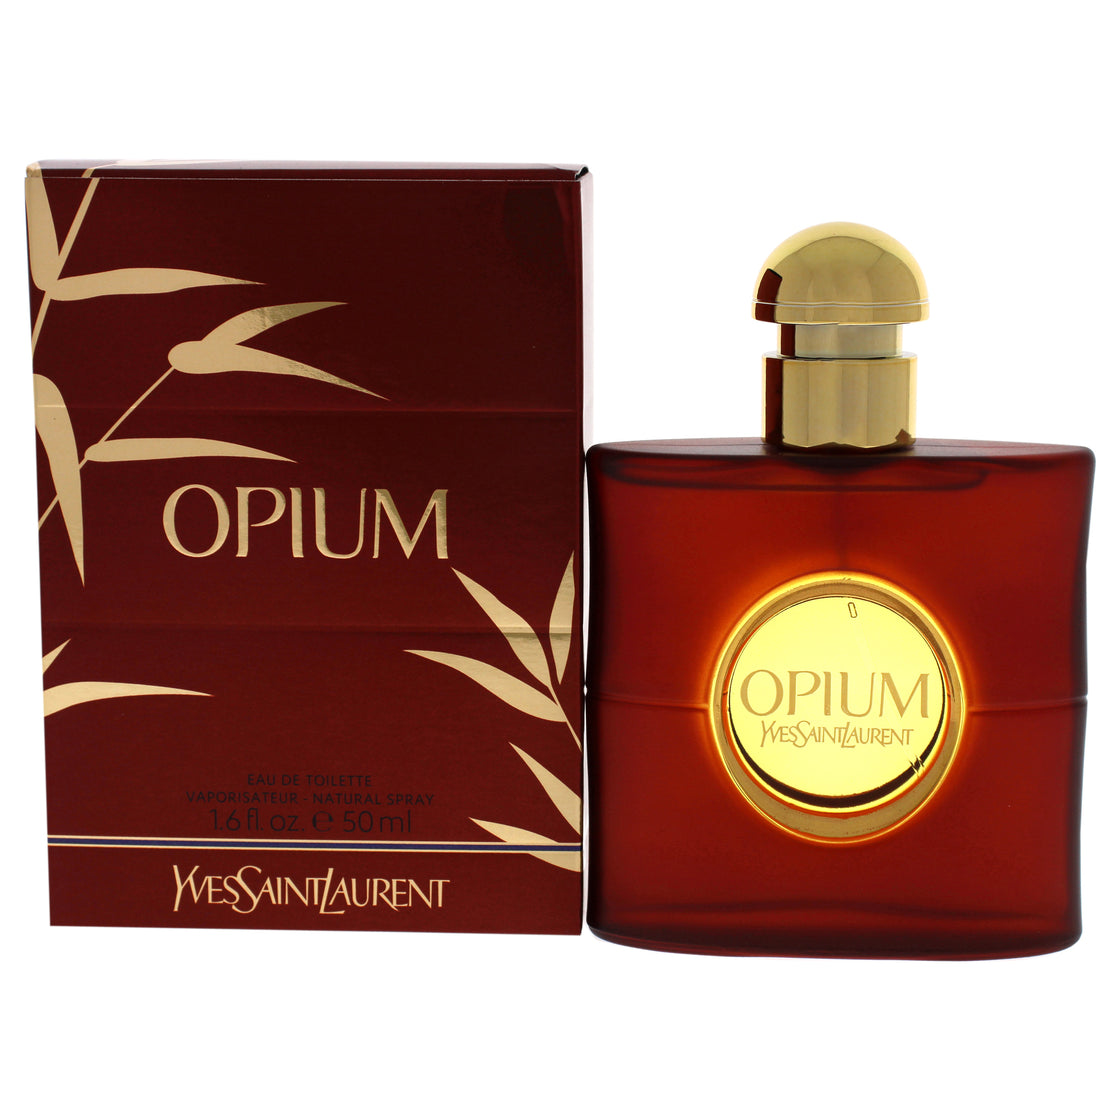 Opium by Yves Saint Laurent for Women - 1.6 oz EDT Spray